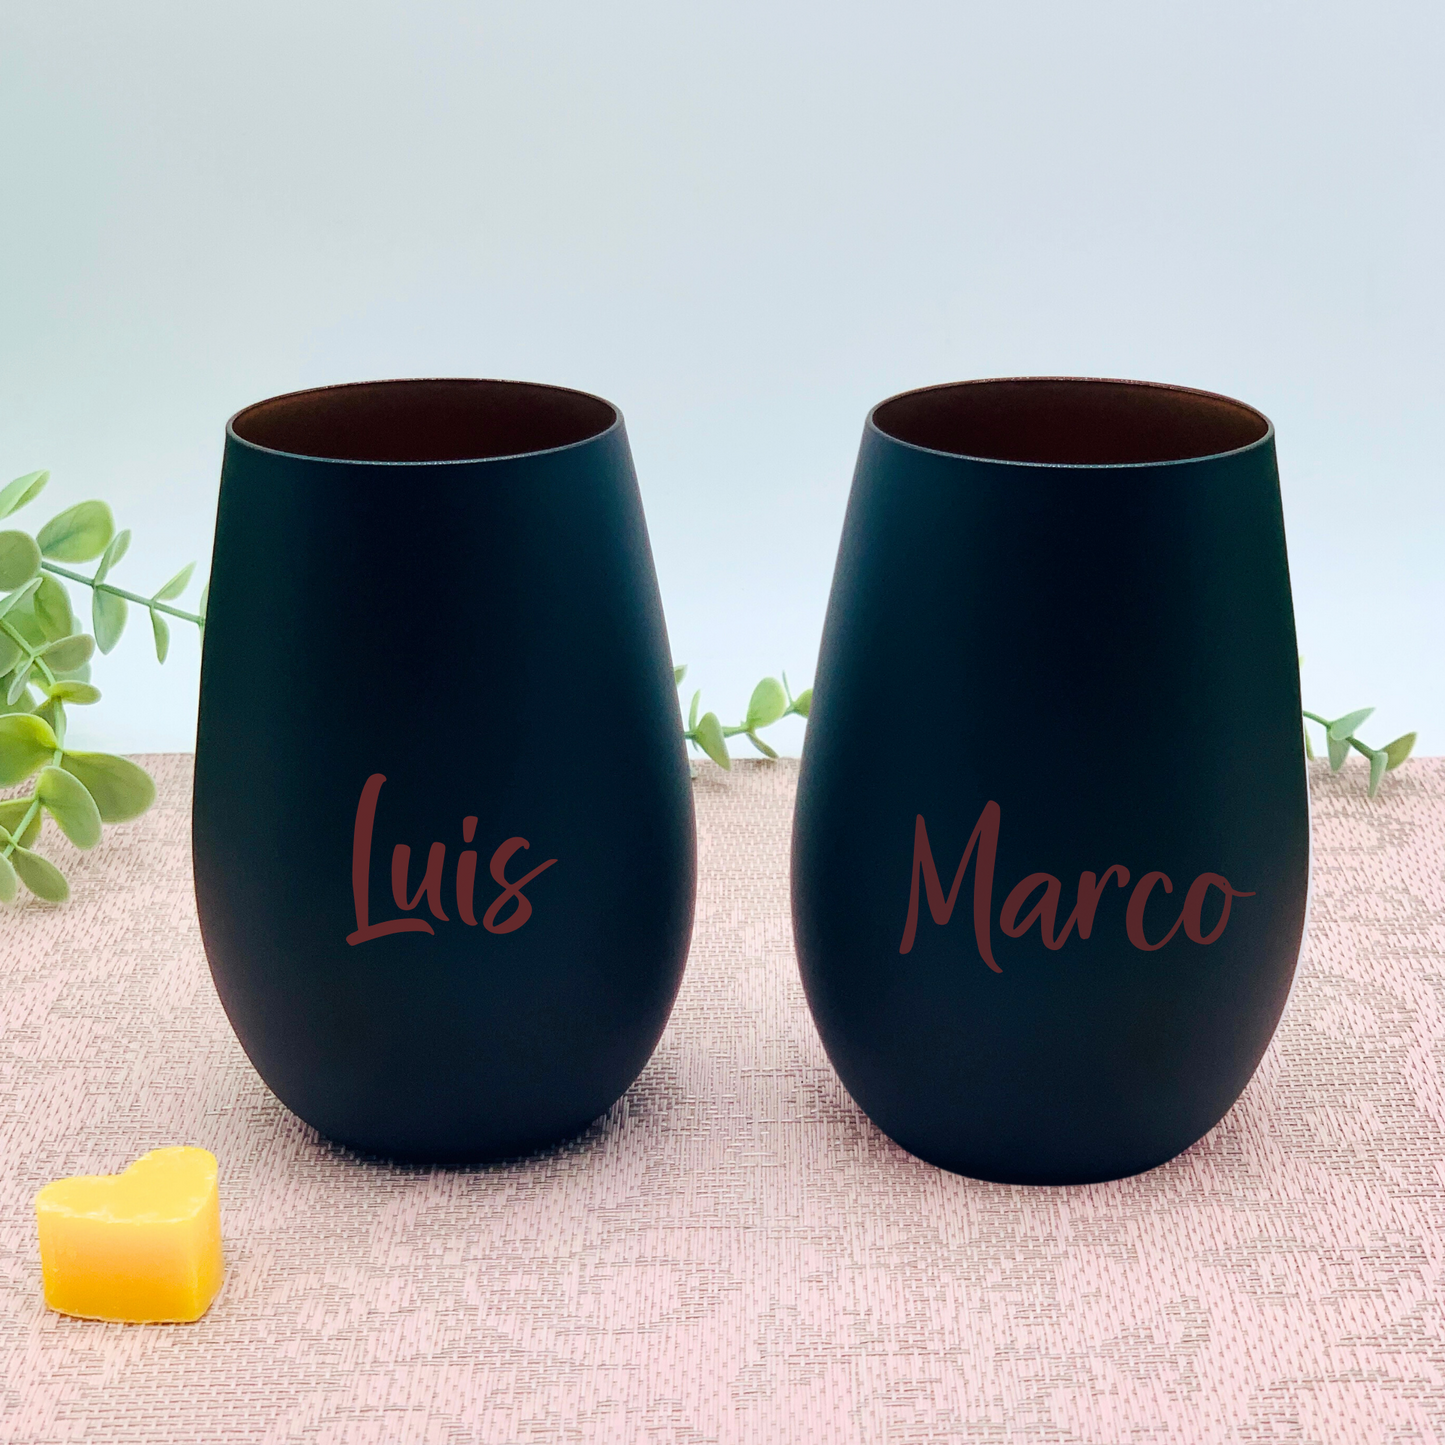 Trinkglas - Windlicht - mit Gravur personalisiert - Glas mit Namen - Hochzeitsgeschenk Mr & Mrs Set - Glas schwarz/kufper